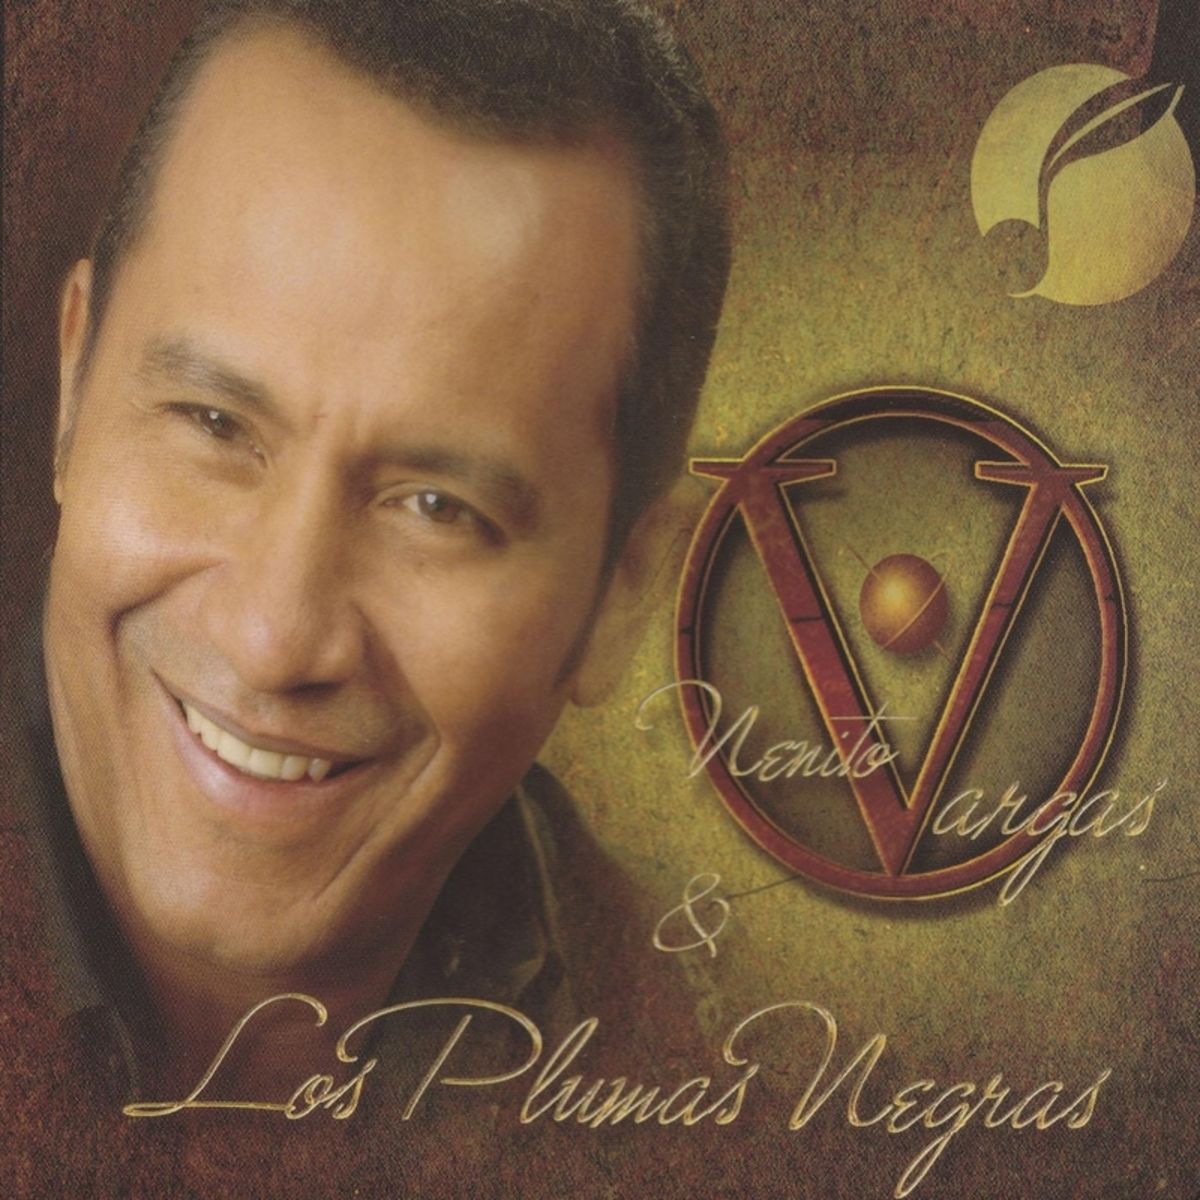 4 - Nenito Vargas y los Plumas Negras - Fue una Novela.mp3